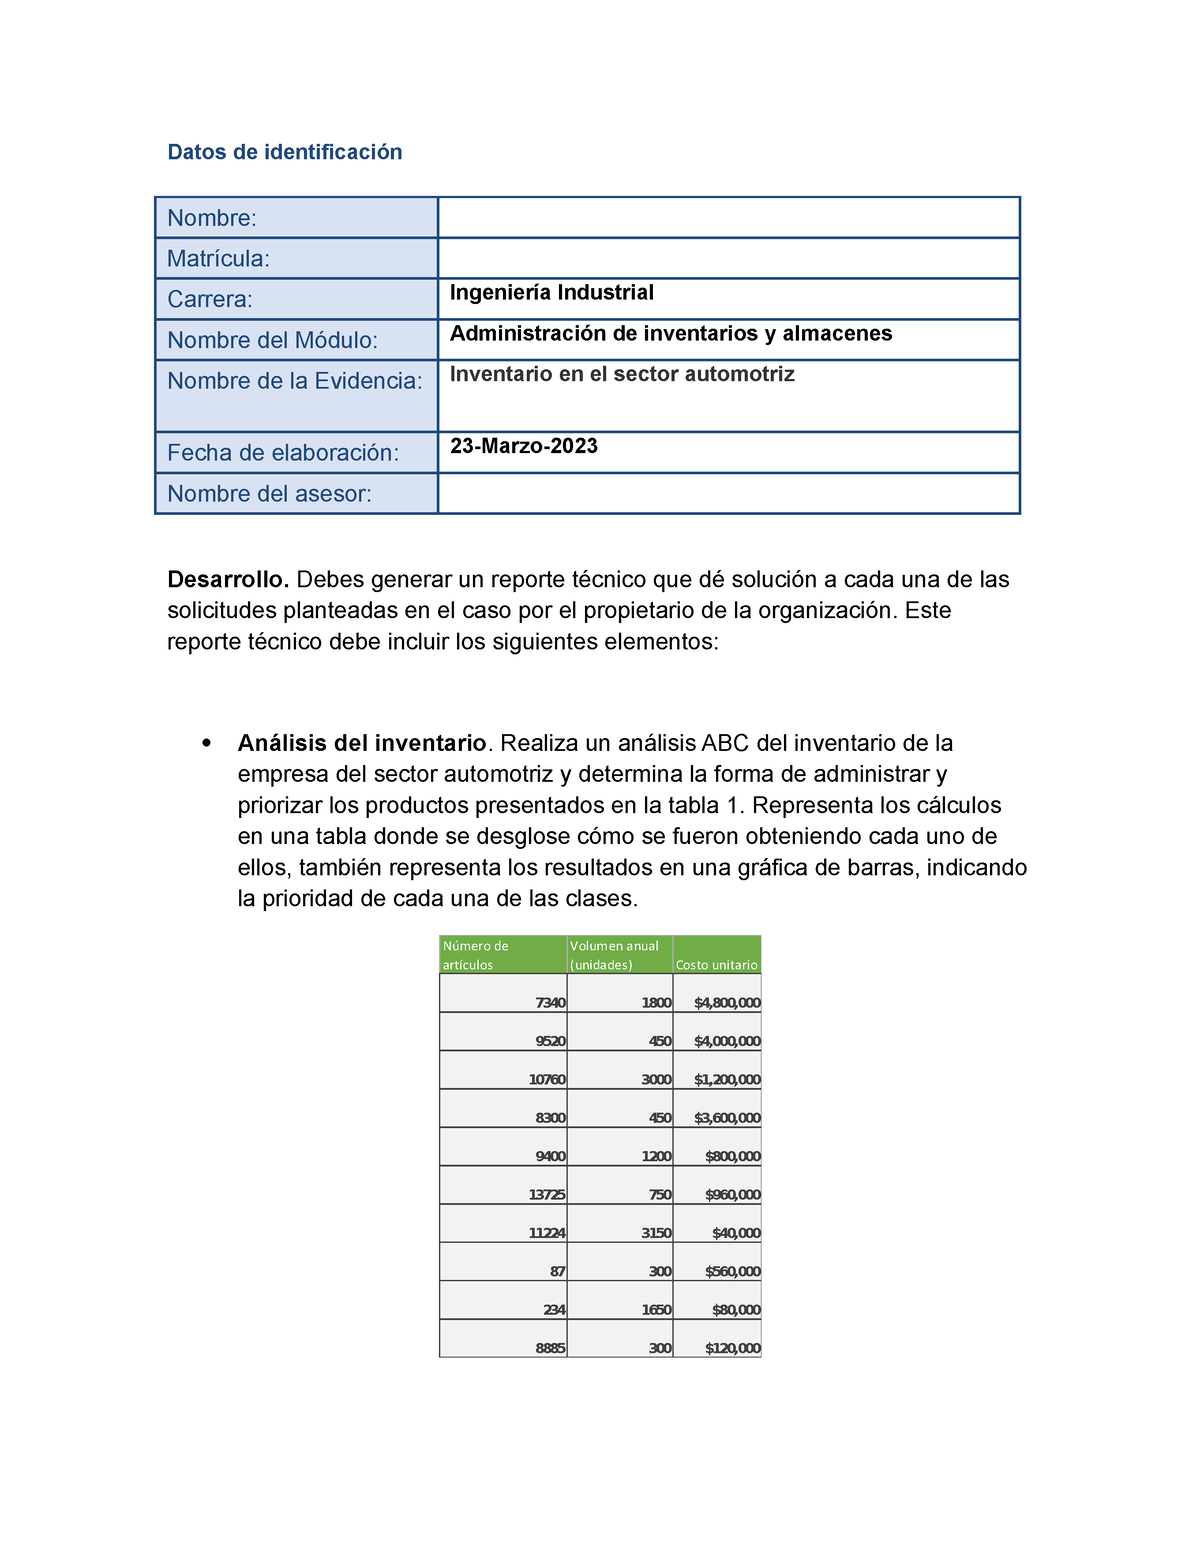 Garcia Alan Ea2 Inventario En El Sector Automotriz Datos De Identificación Nombre Matrícula 9722